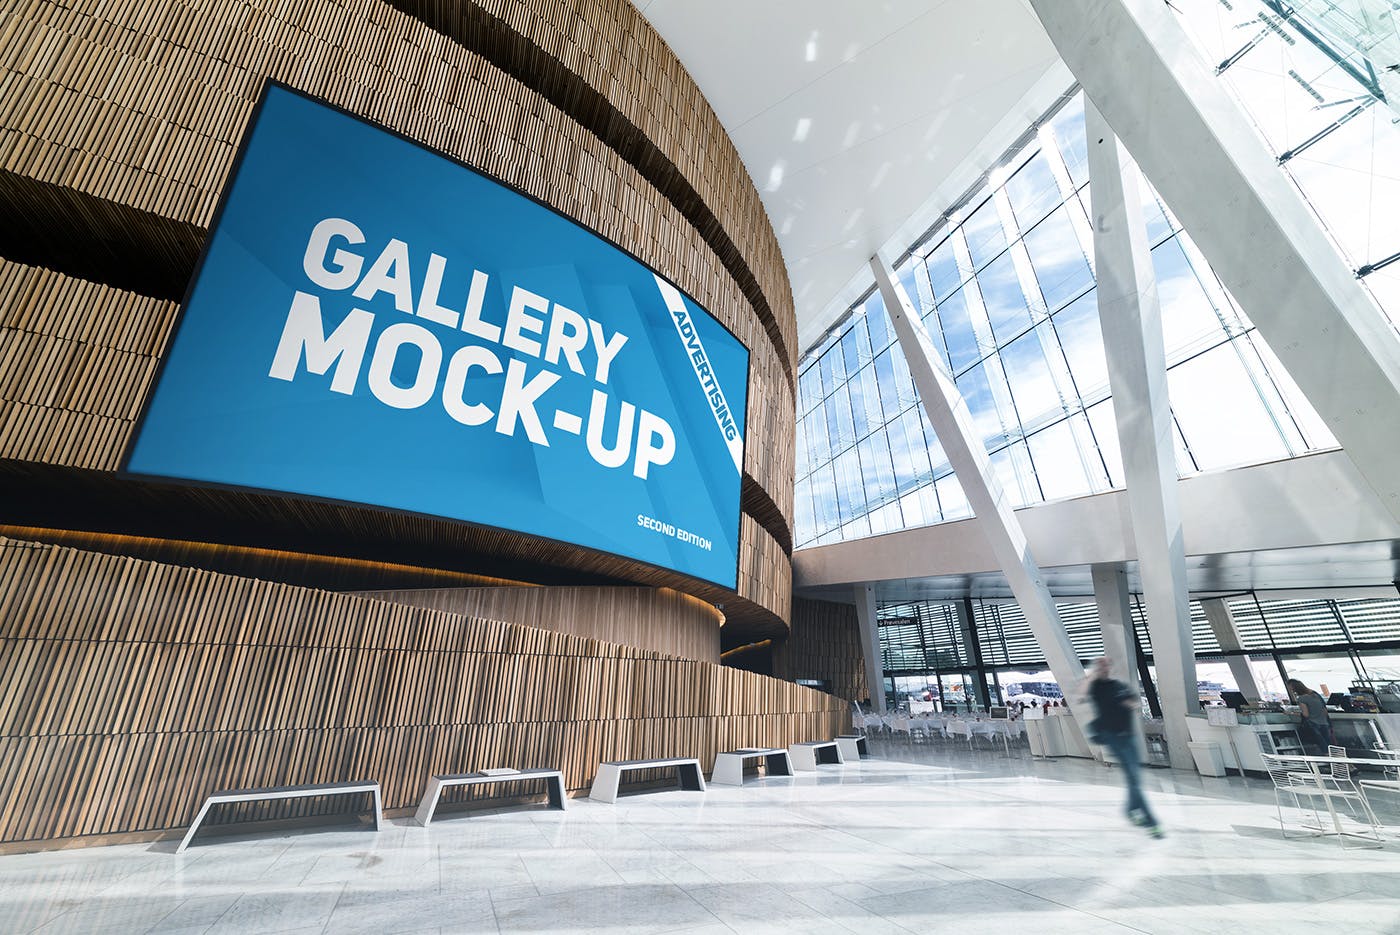 展厅画廊巨幅海报设计图样机第一素材精选模板v3 Gallery Poster Mockup v.3插图(1)